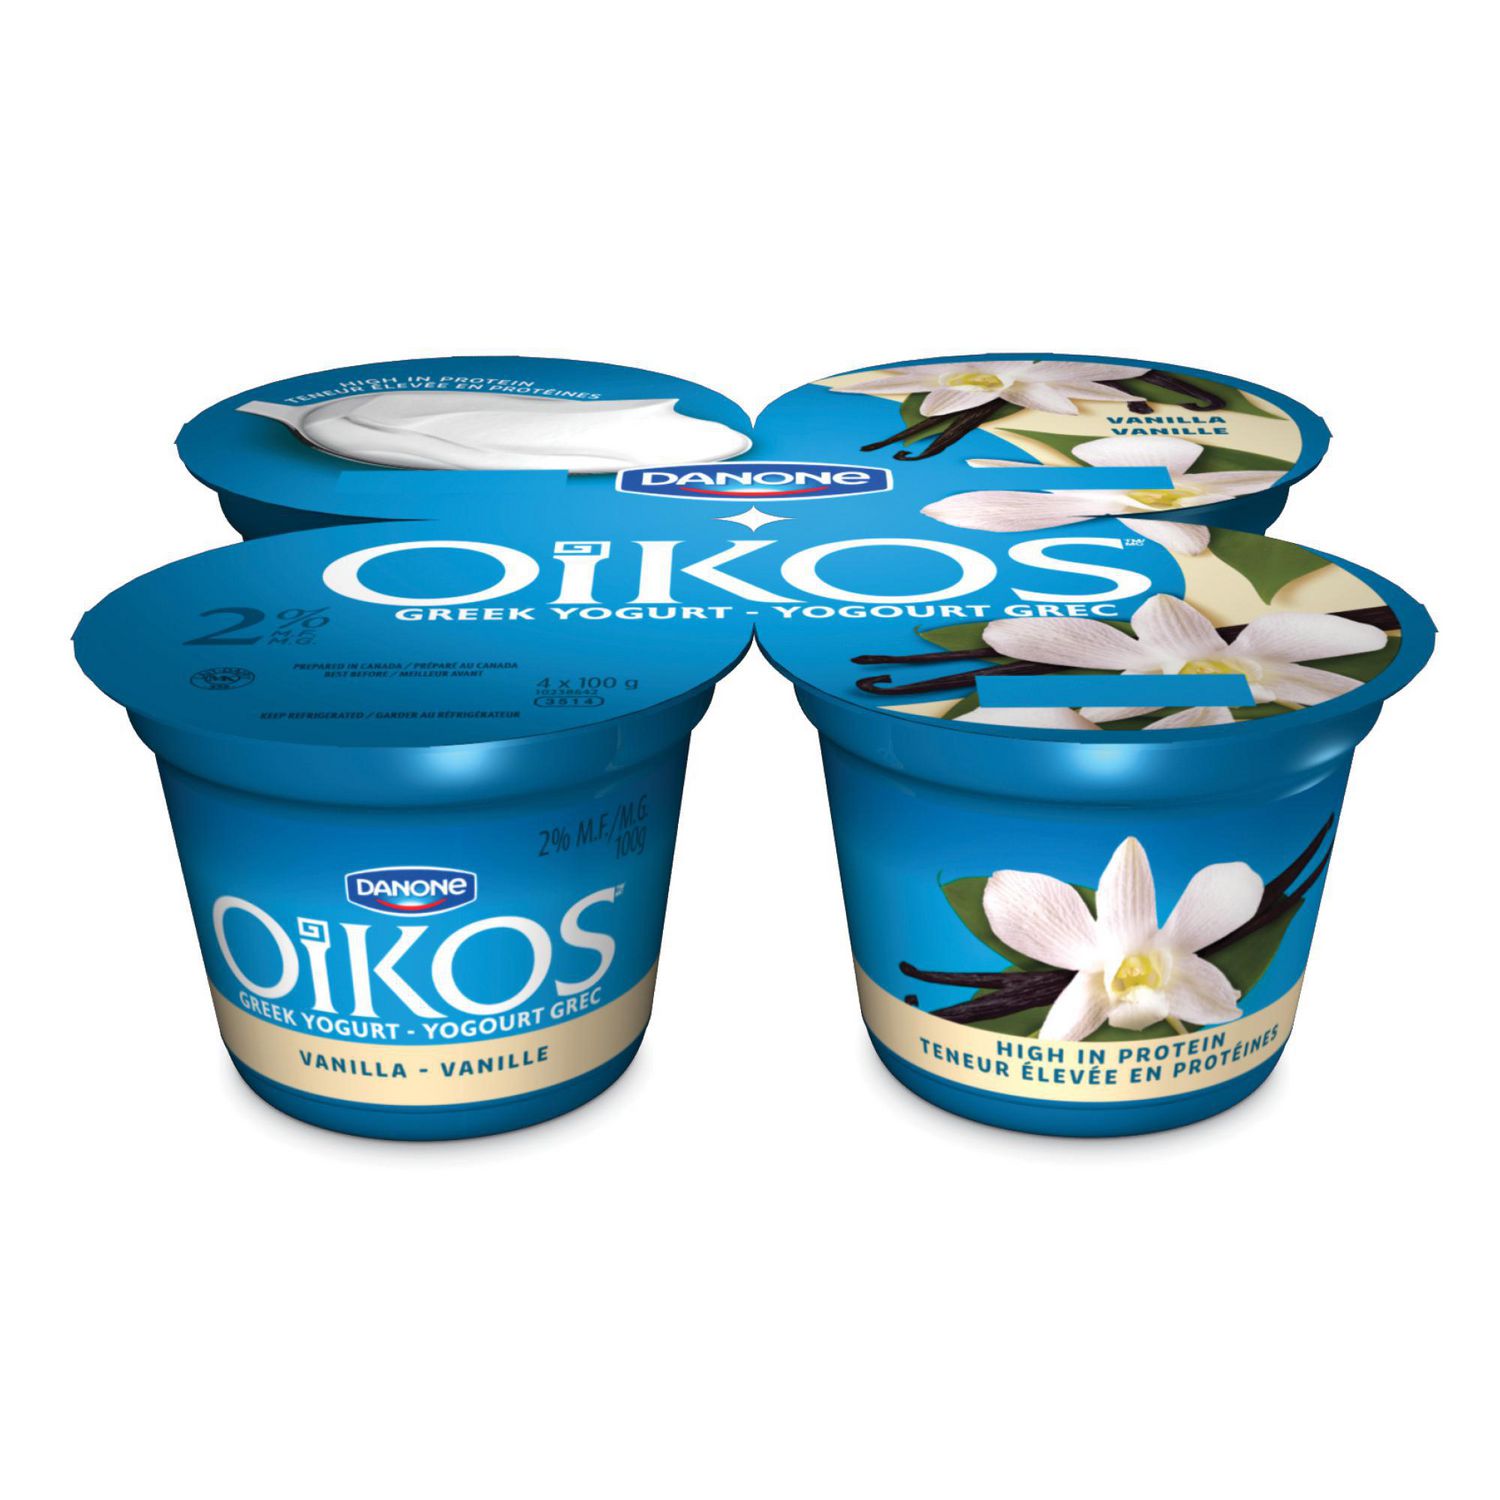 Oikos Vanilla 2% M.F. Greek Yogurt